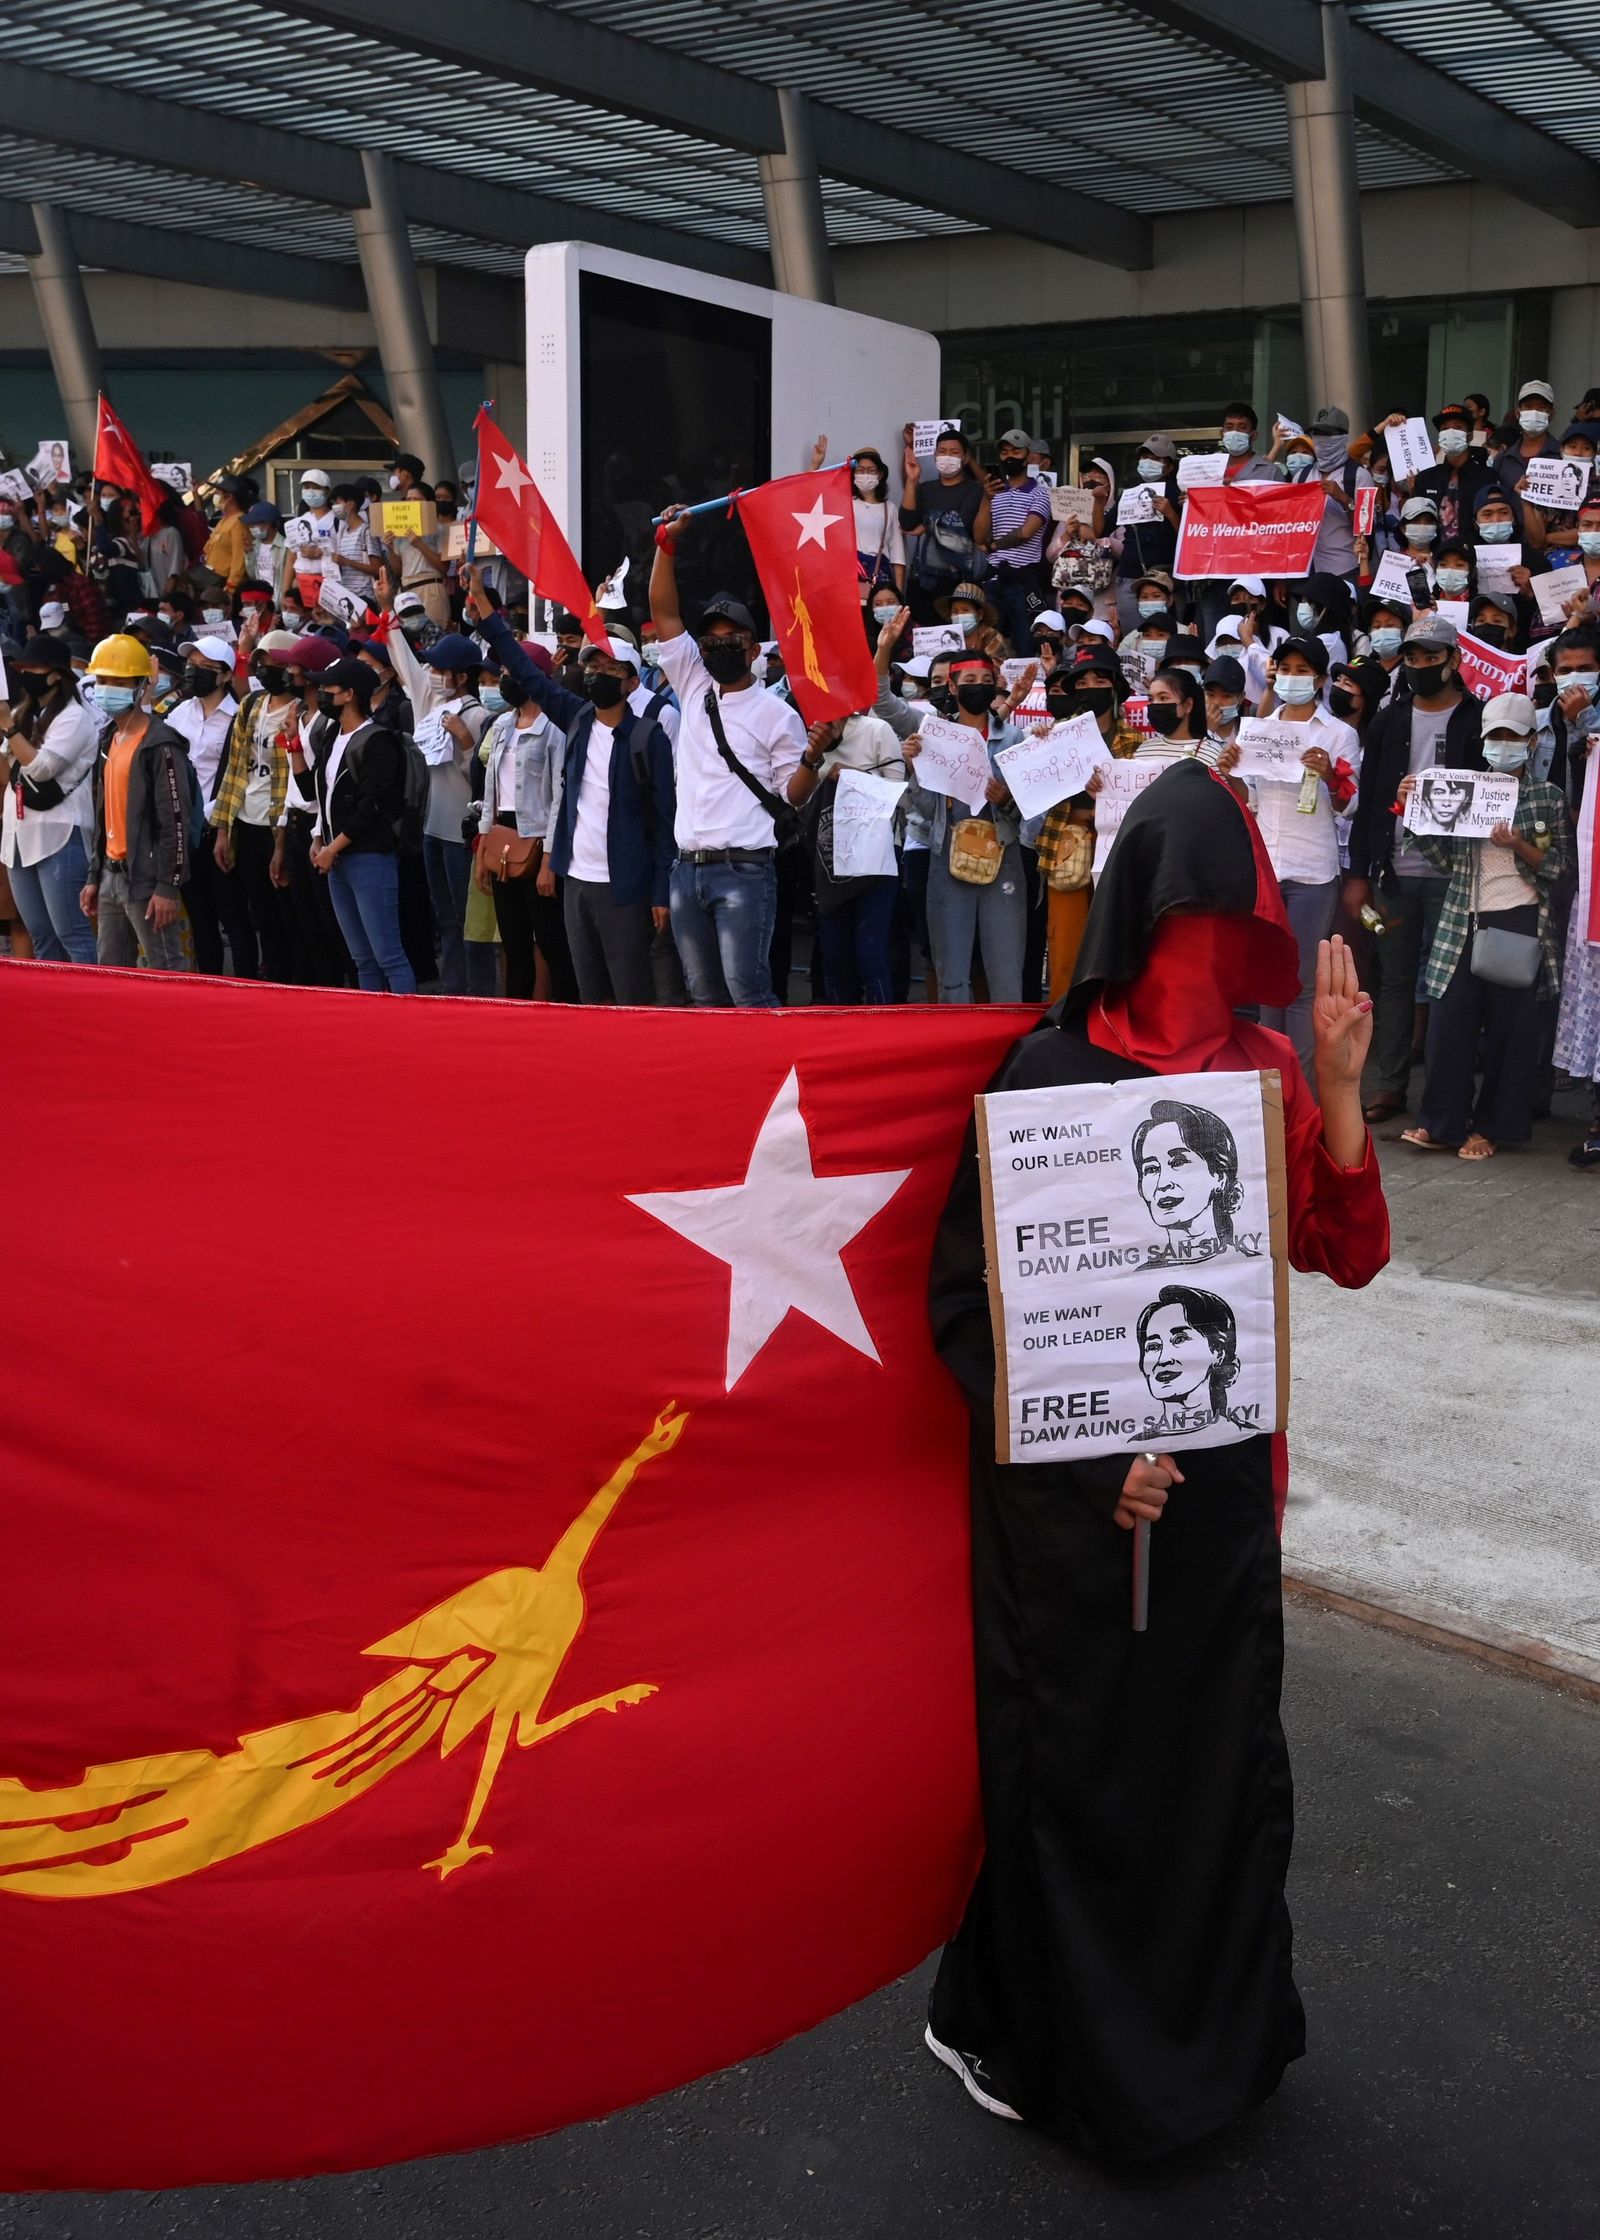 تظاهرة في ميانمار منددة بالانقلاب وتطالب بإطلاق سراح الزعيمة المدنية  - AFP